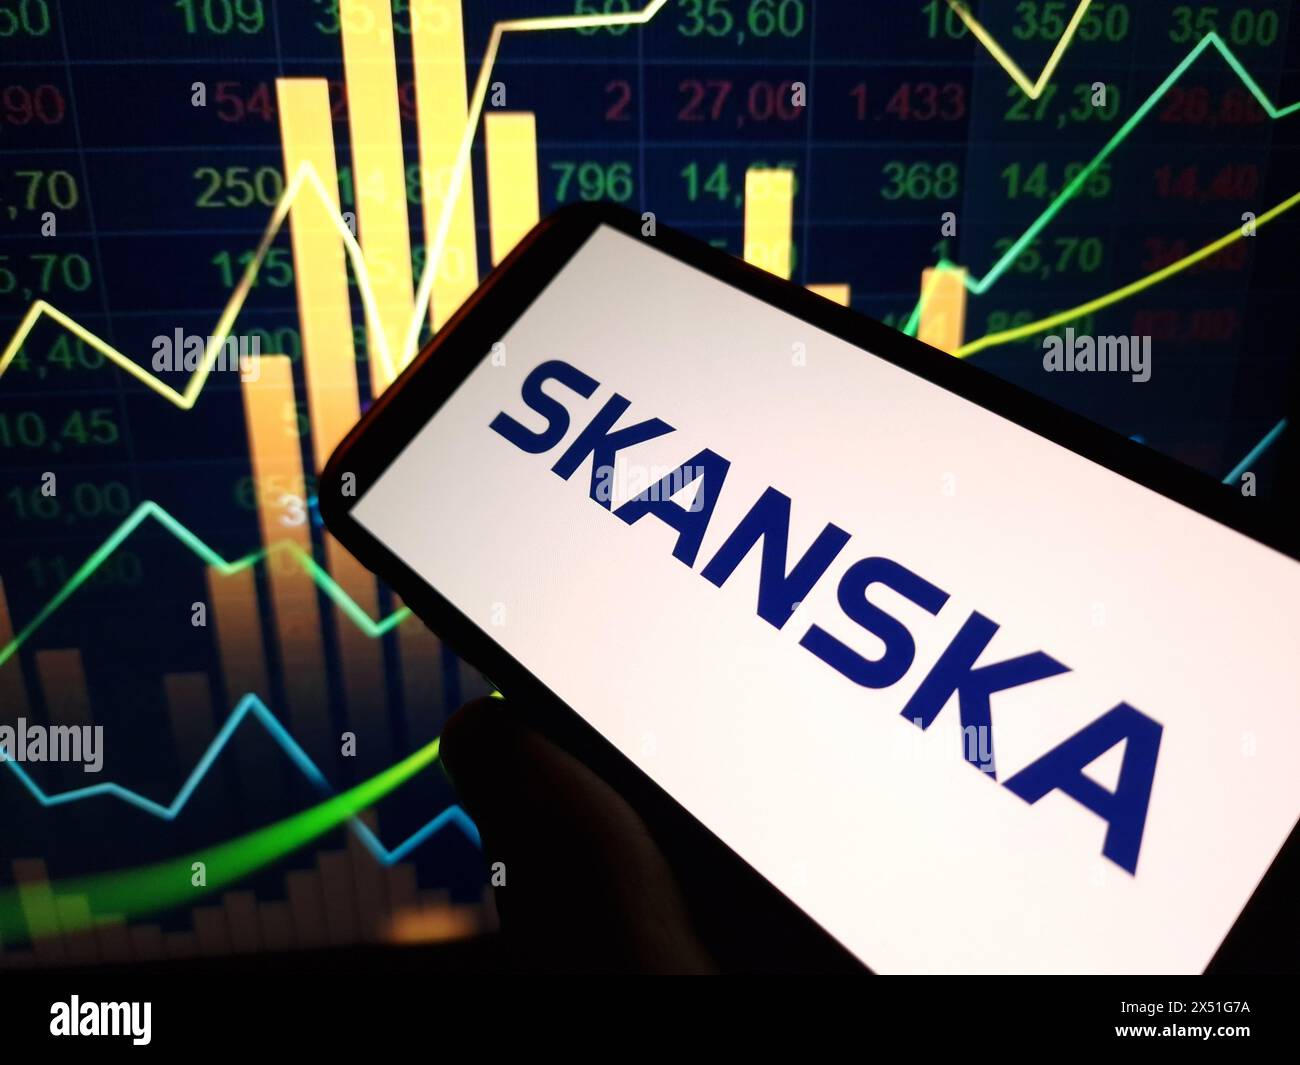 Konskie, Pologne - 29 avril 2024 : logo de la société Skanska affiché sur le téléphone portable Banque D'Images